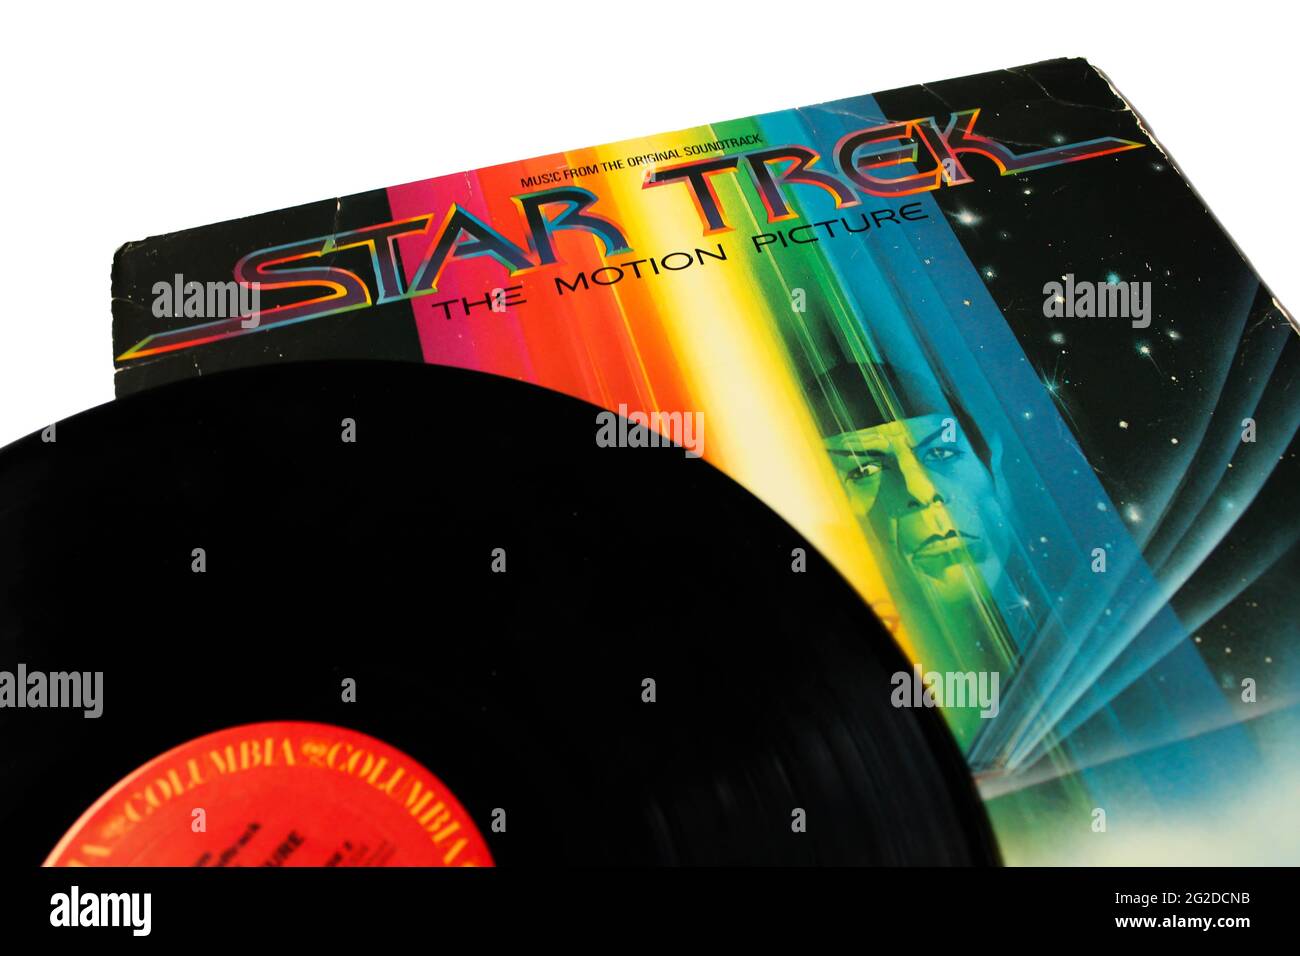 Star Trek The Motion Picture ist ein US-amerikanischer Science-Fiction-Film aus dem Jahr 1979 unter der Regie von Robert Wise, der auf der Fernsehserie basiert. Soundtrack-Musikalbum Stockfoto